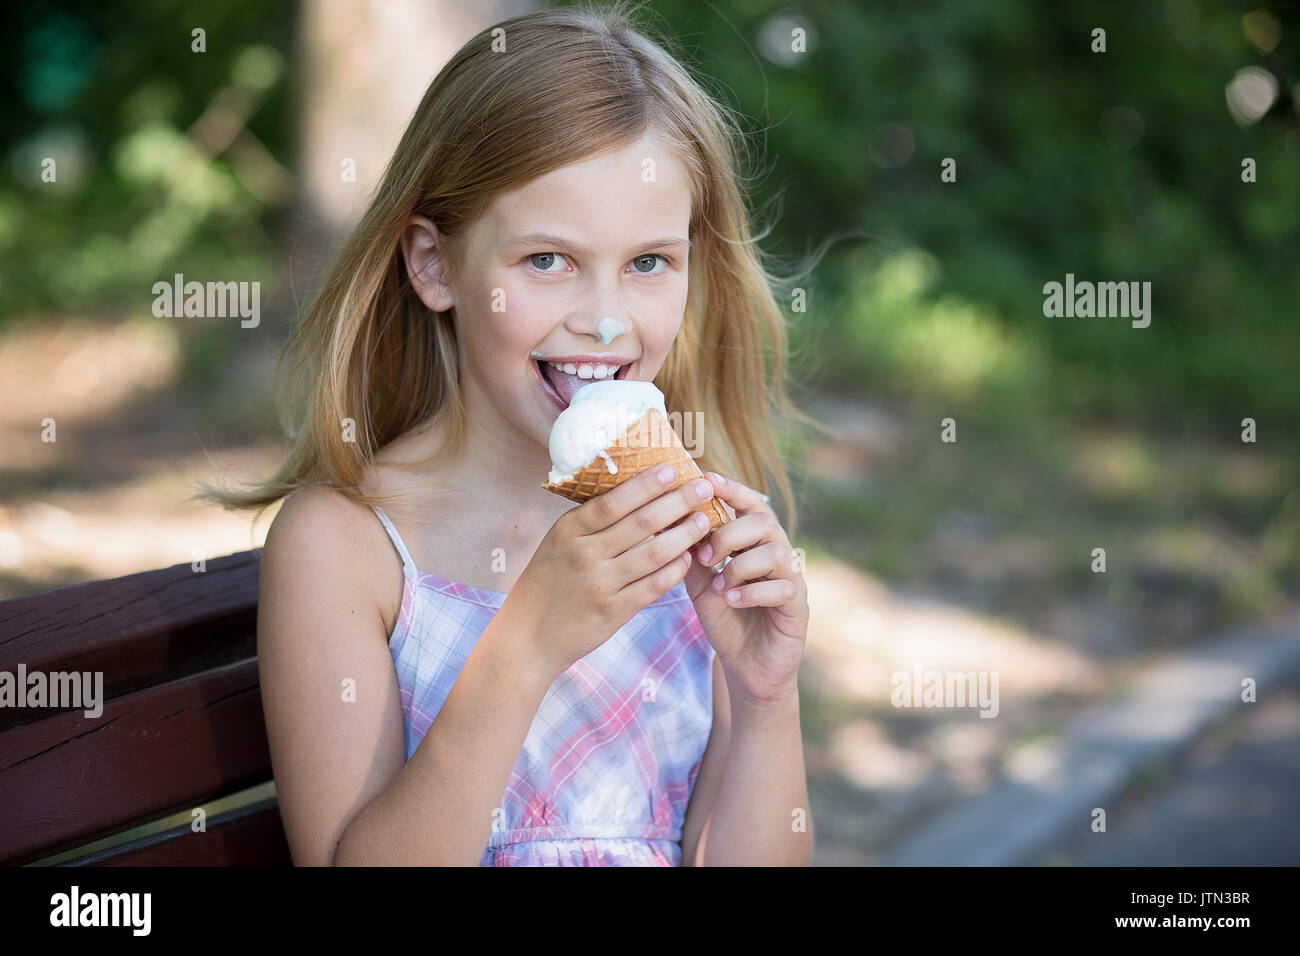 Little girl happy to eat ice cream. Stock Photo